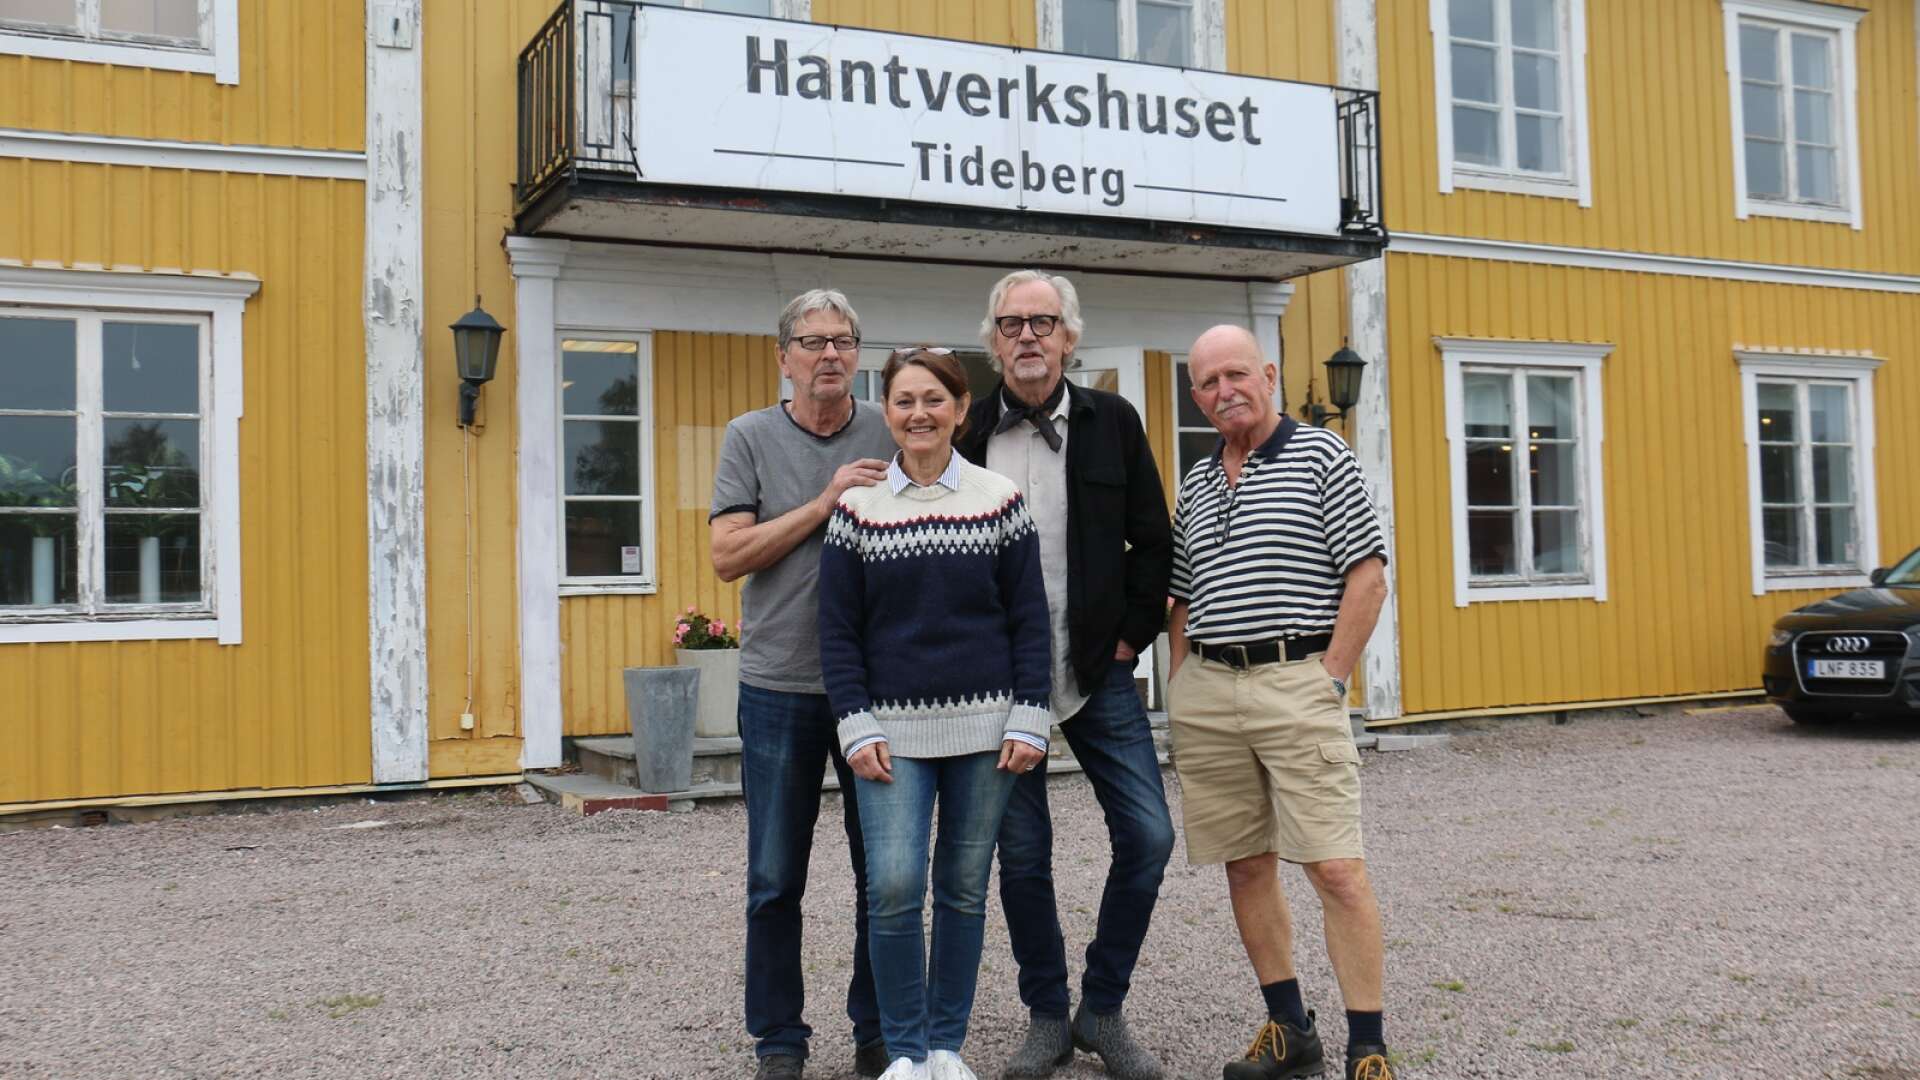 Stig Lagerin, Suzanne Lagerin, Johan Karlsson och Thorleif Aiff öppnar upp hantverkshuset på lördag.